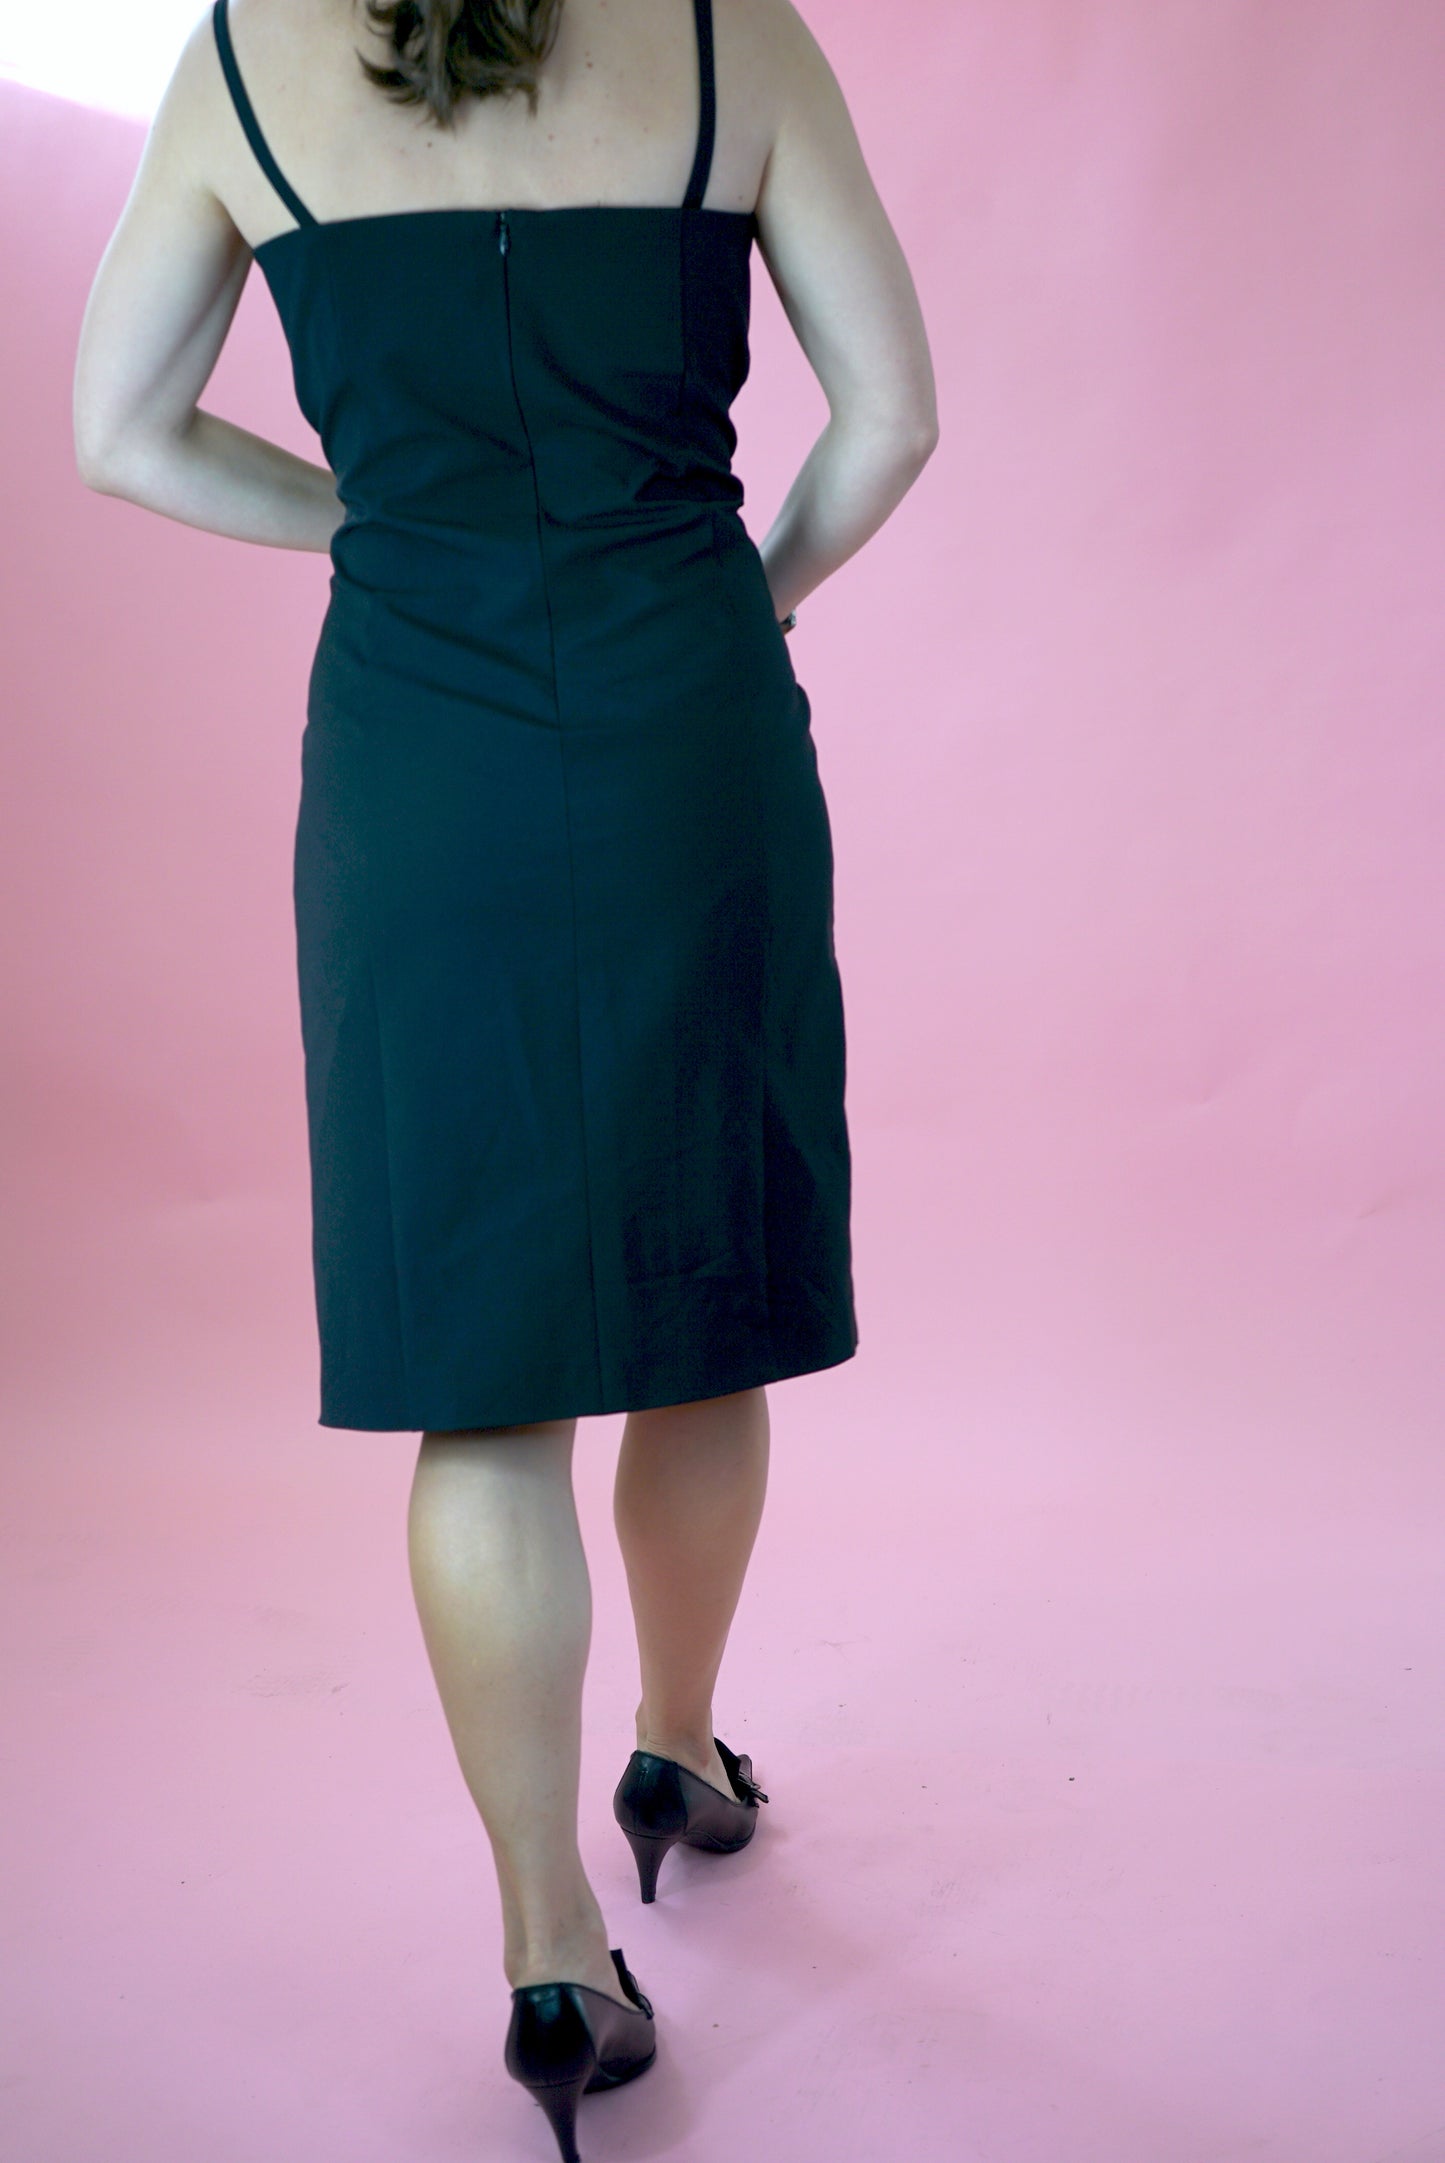 Black Vintage Midi Strap Dress Slit Stretchy Pencil Dress UK Size 14-16/ EU 42-44 Size L